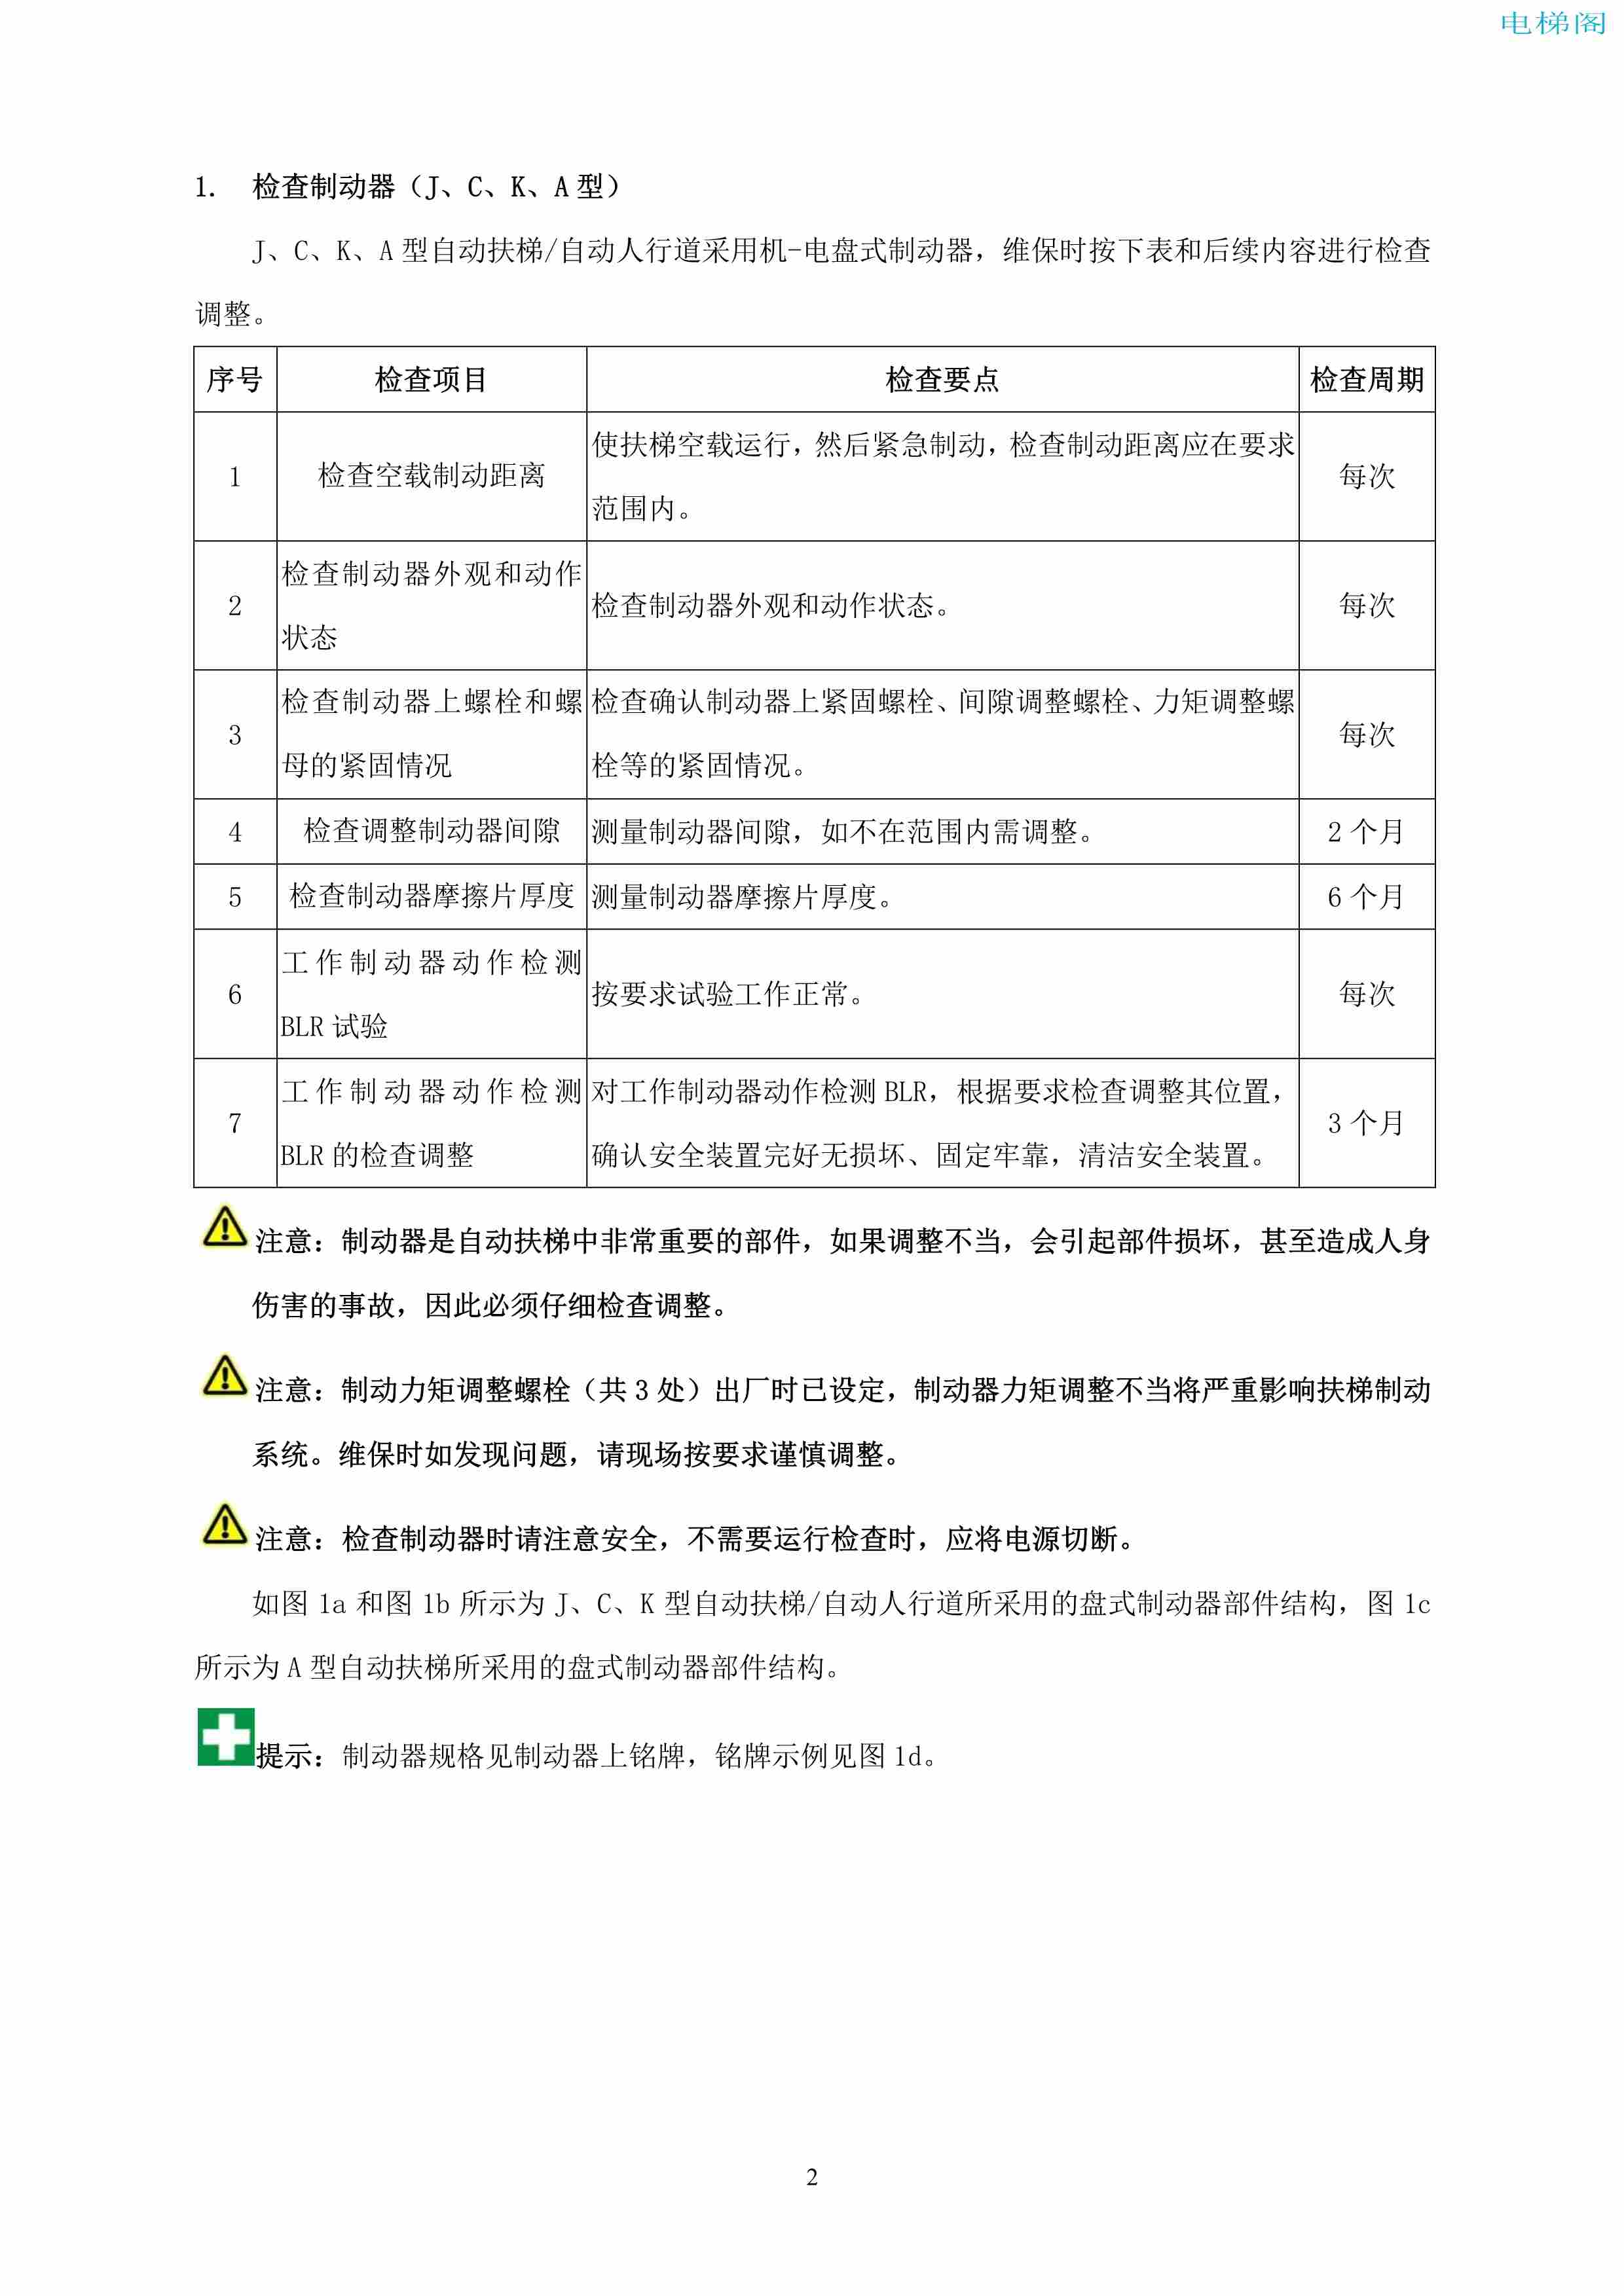 上海三菱电梯有限公司自动扶梯制动器维护作业要领汇编_3.jpg